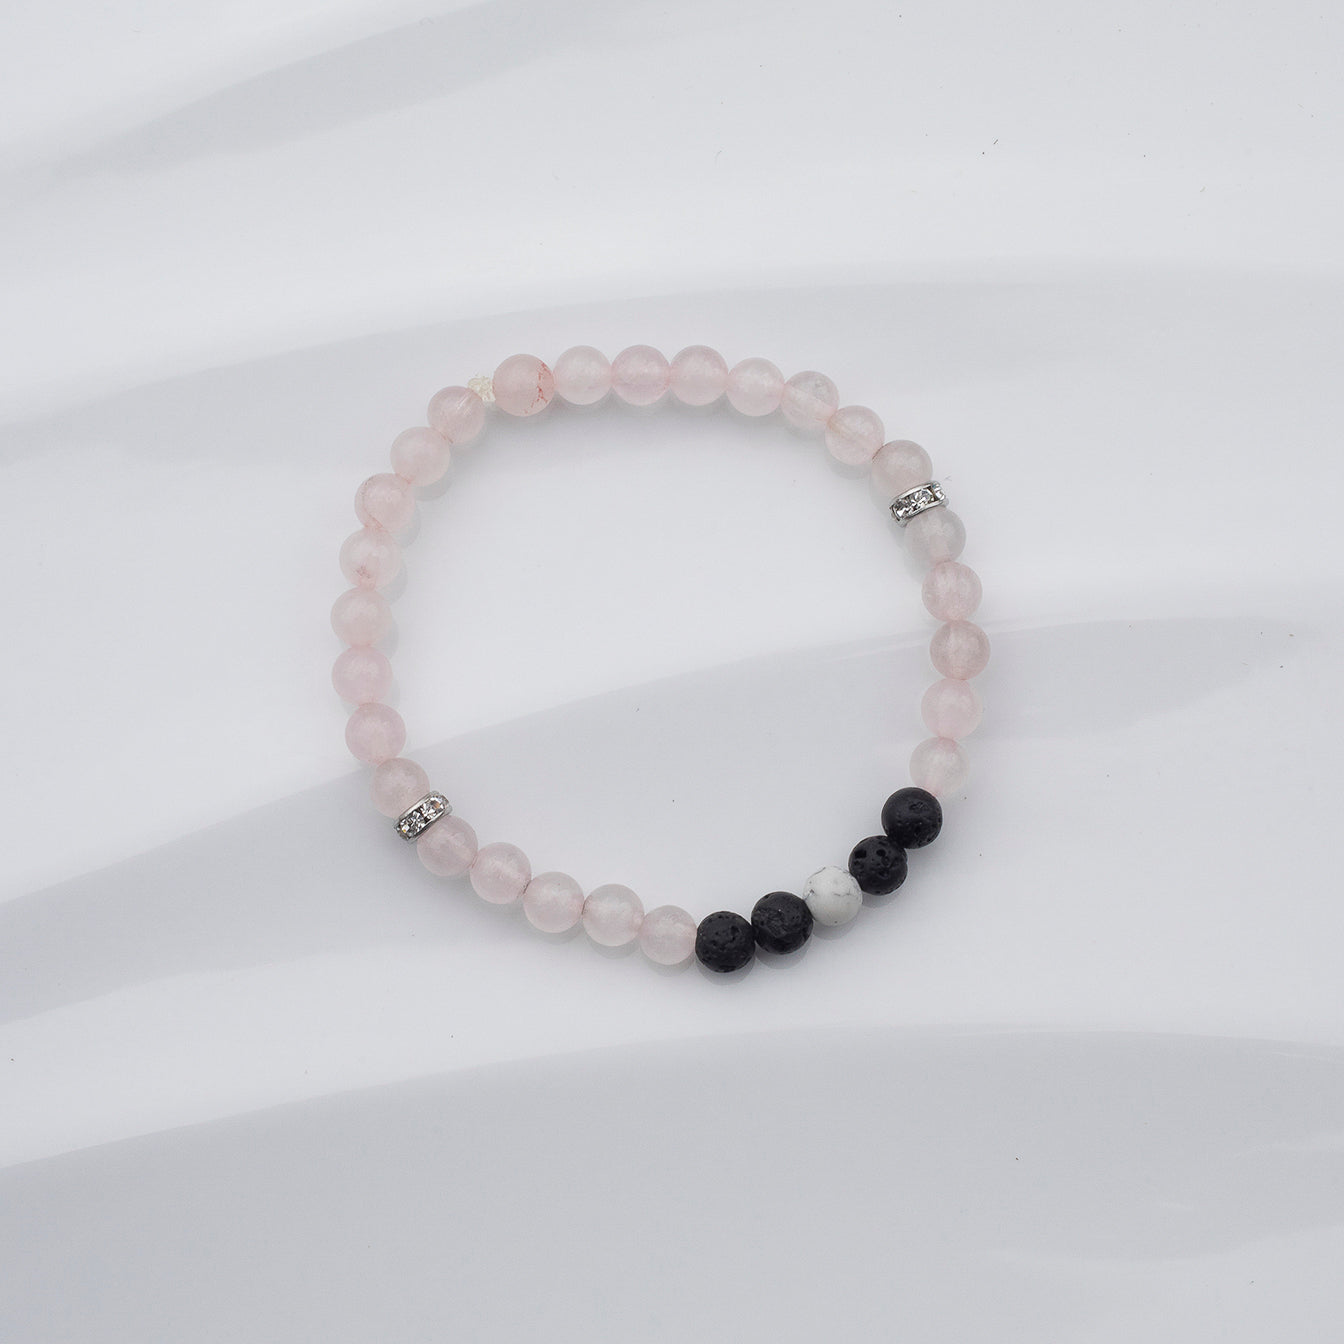 Bracelet de quartz rose, howlite et pierres volcaniques noires sur fond blanc